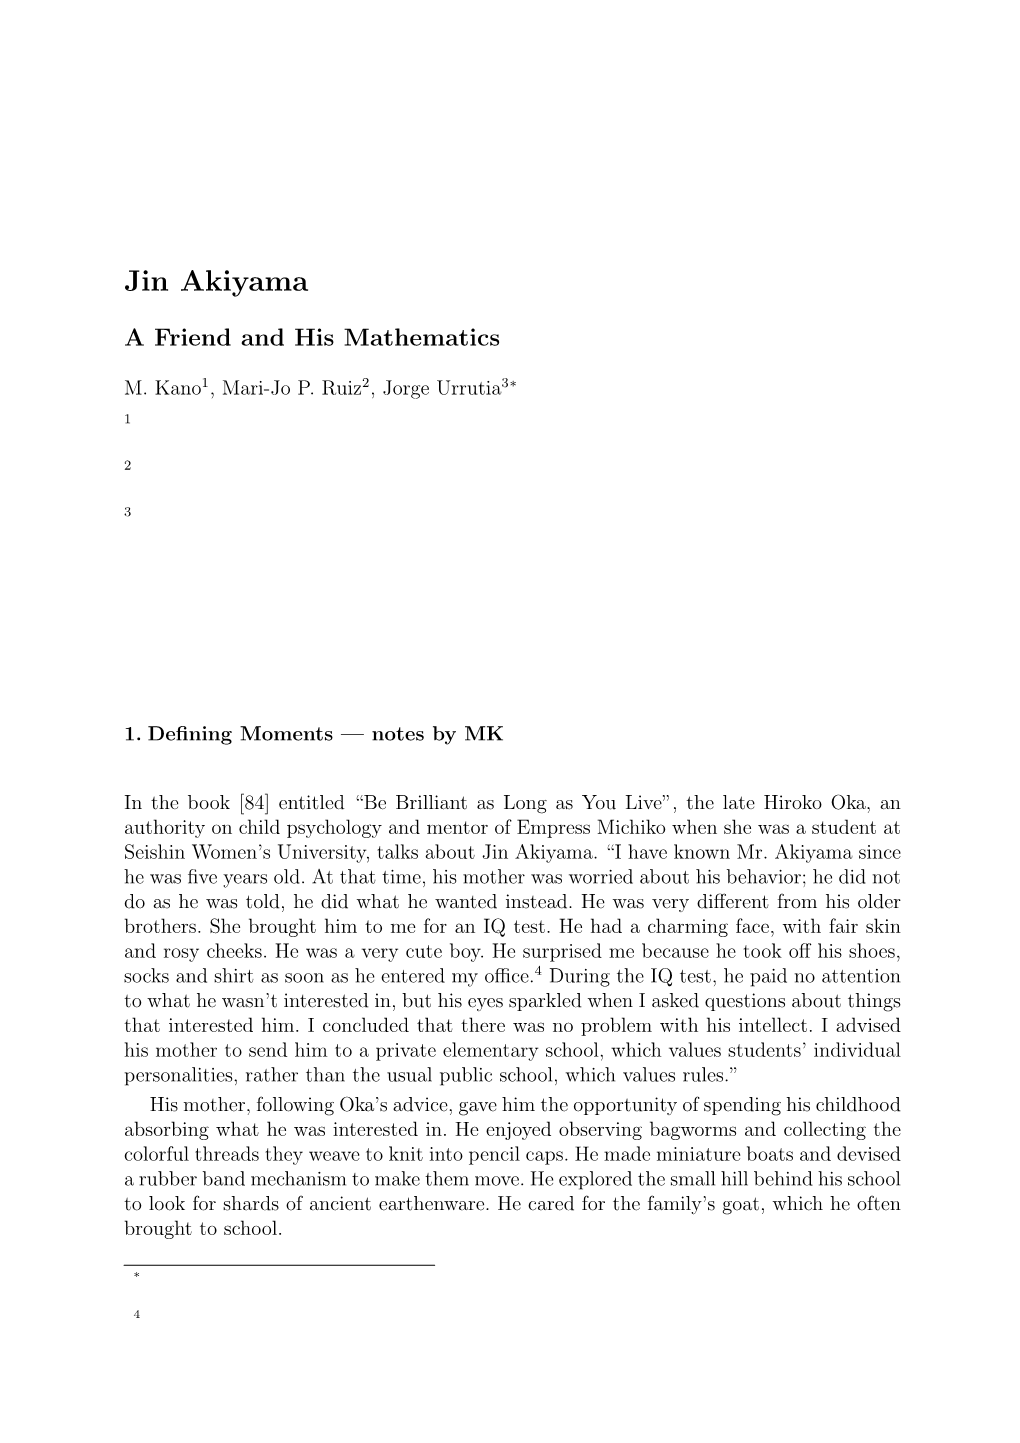 Jin Akiyama: a Friend and His Mathematics